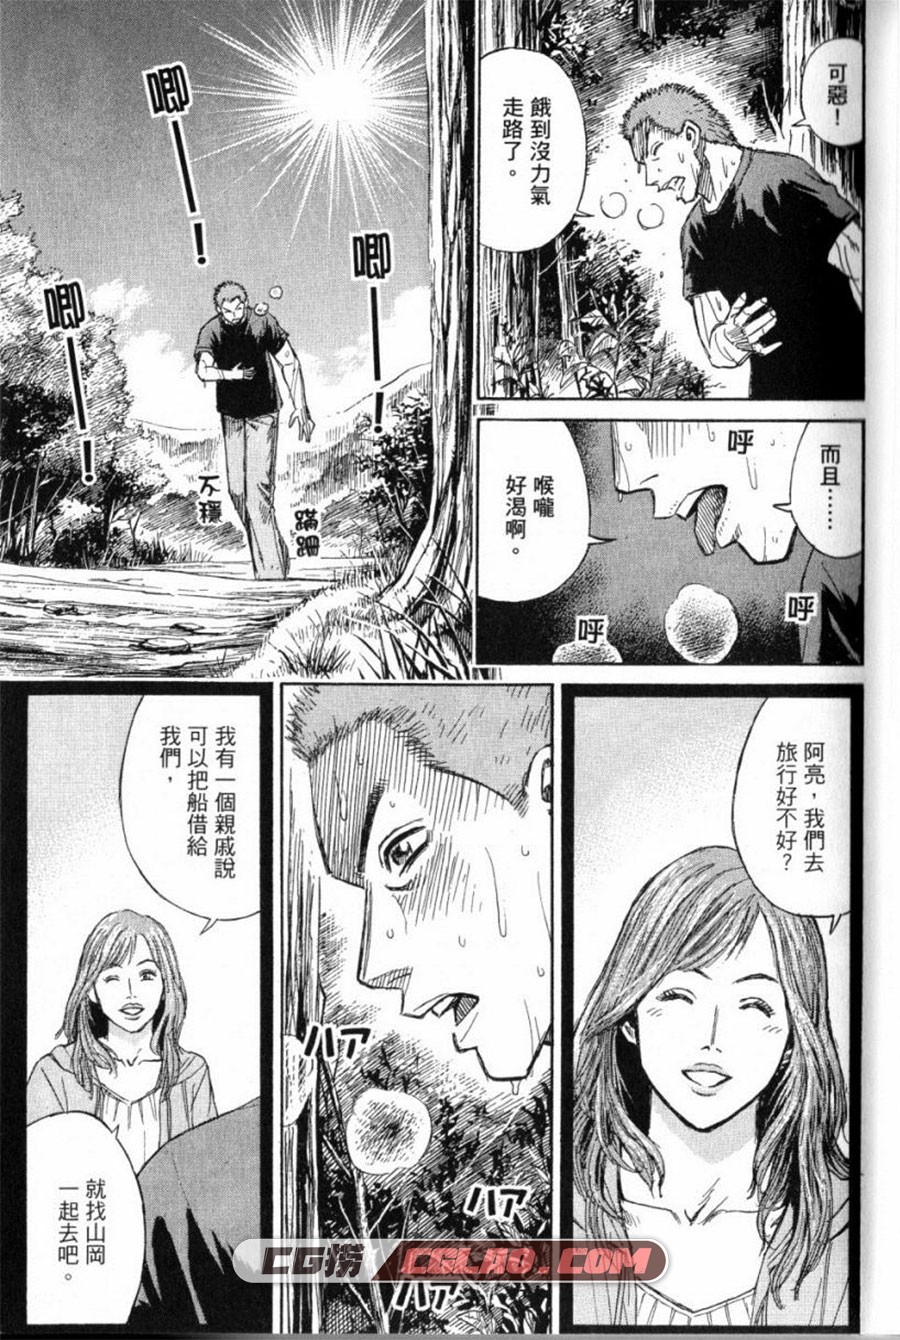 彼岸岛2 最后的47天 松本光司 1-16卷 恐怖漫画全集下载,第1卷_0005.jpg